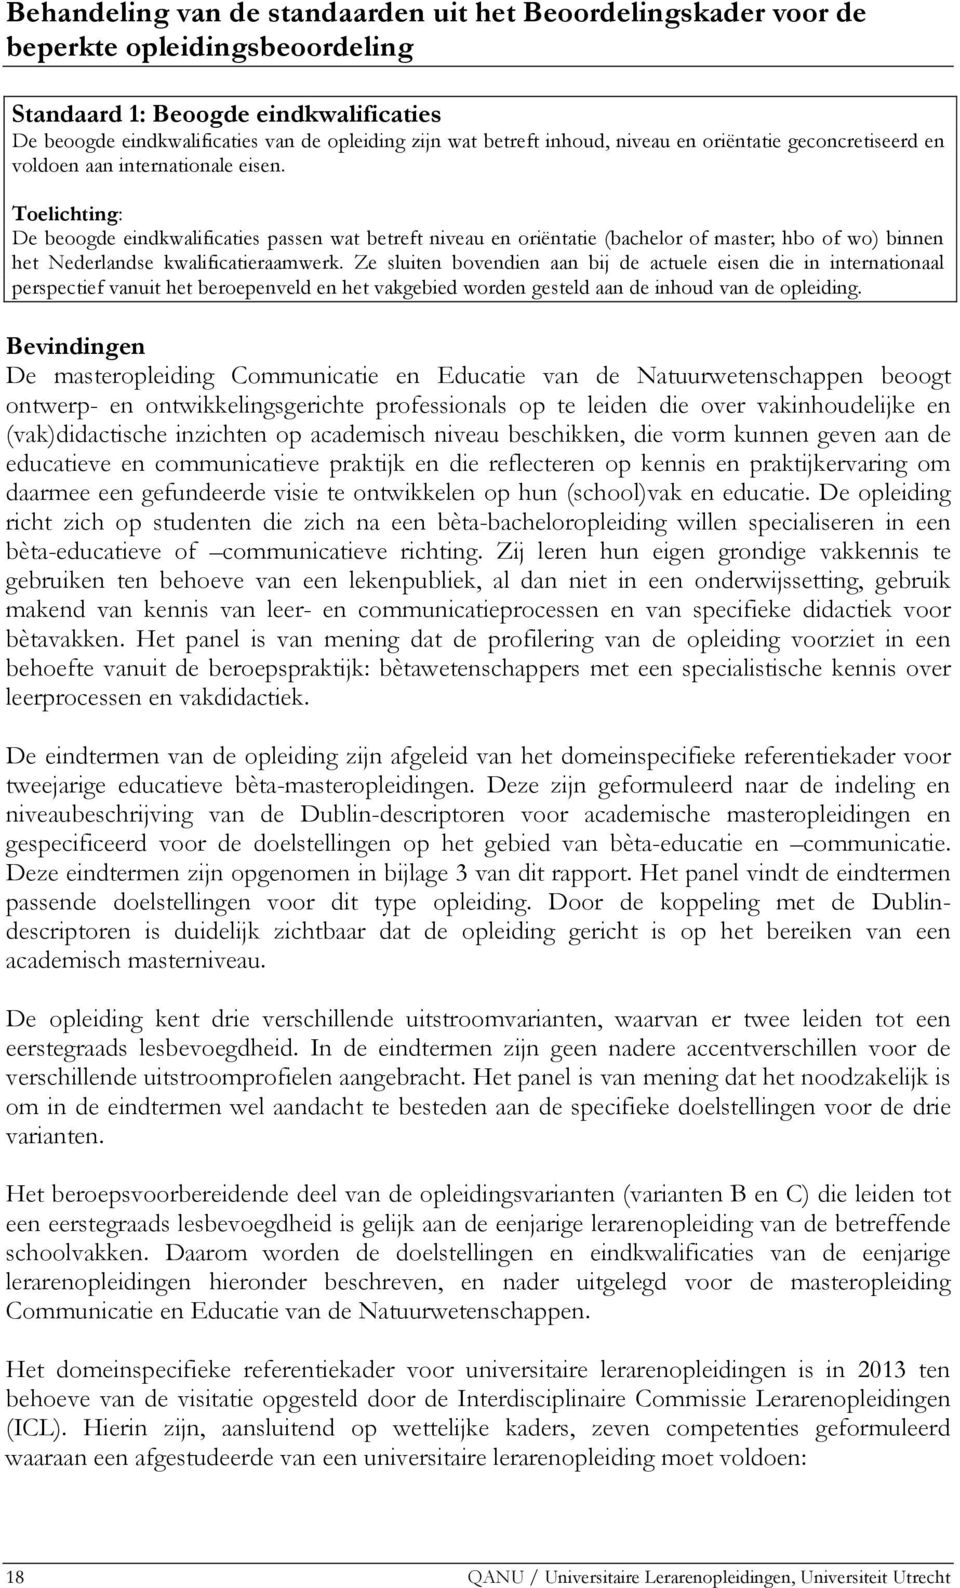 Toelichting: De beoogde eindkwalificaties passen wat betreft niveau en oriëntatie (bachelor of master; hbo of wo) binnen het Nederlandse kwalificatieraamwerk.